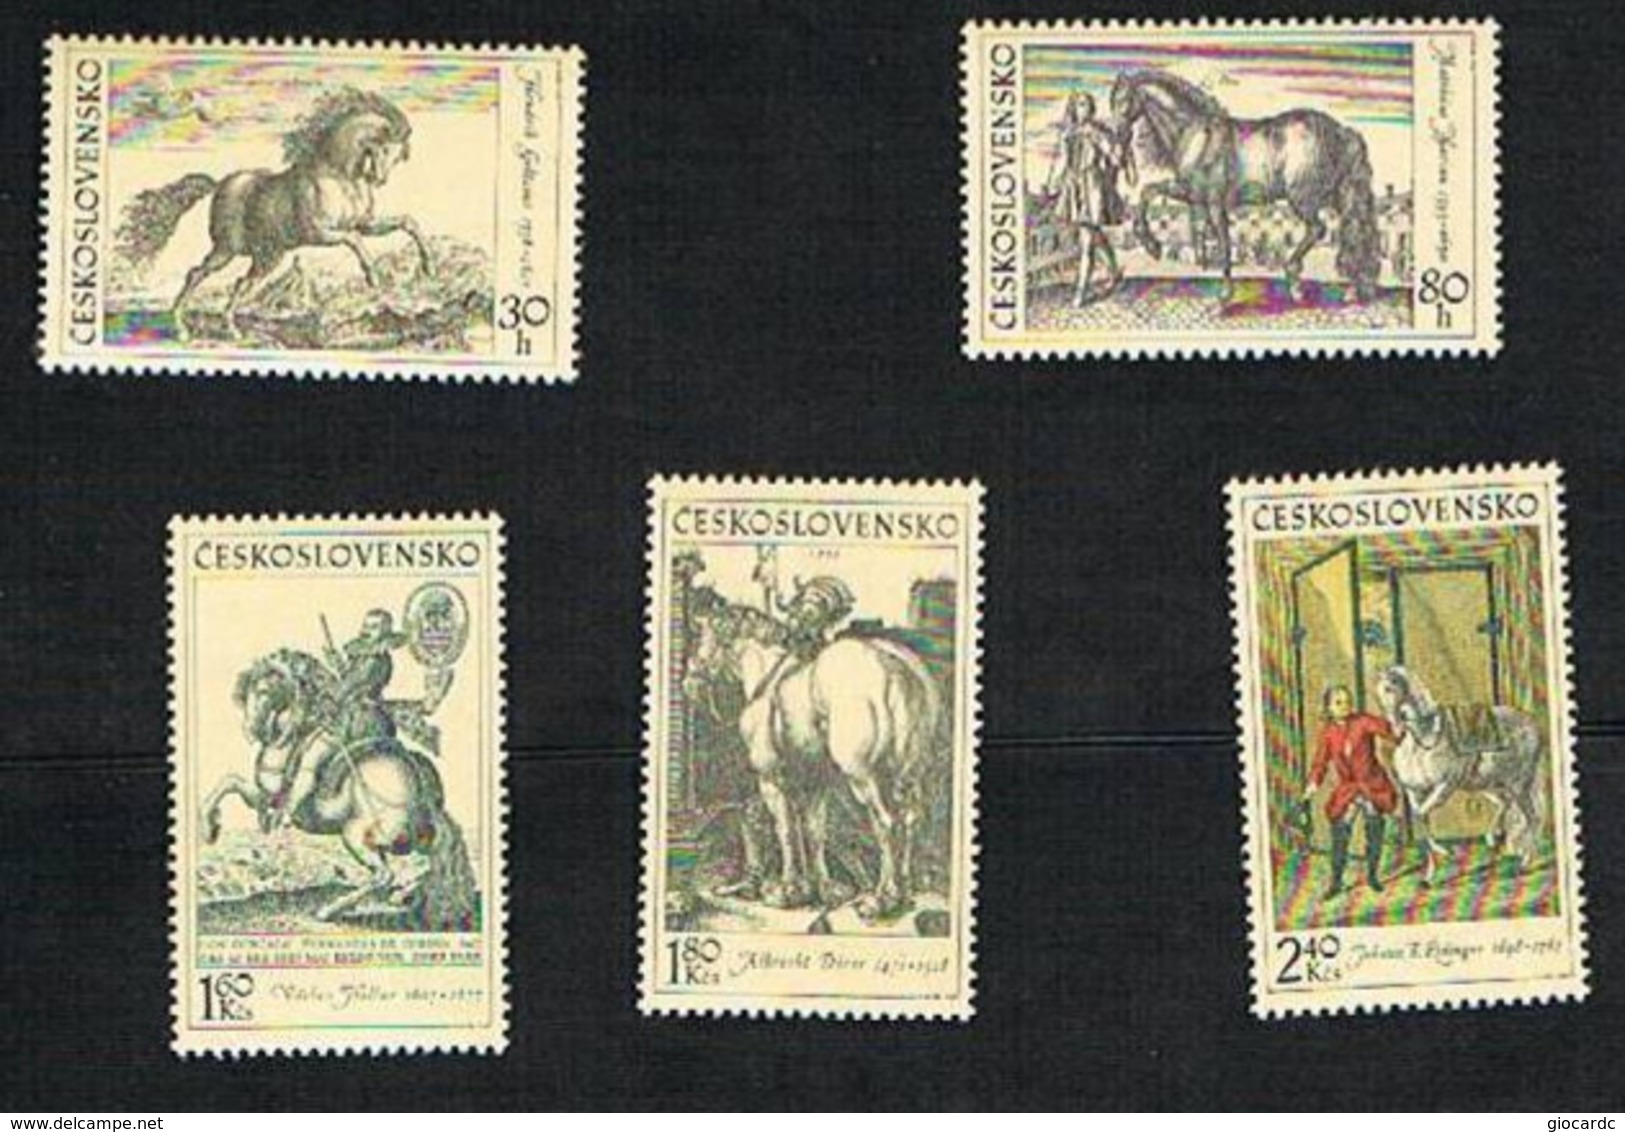 CECOSLOVACCHIA (CZECHOSLOVAKIA) - YVERT  1717.1721 - 1969  IL CAVALLO NELLA PITTURA -   NUOVI (MINT) ** - Unused Stamps